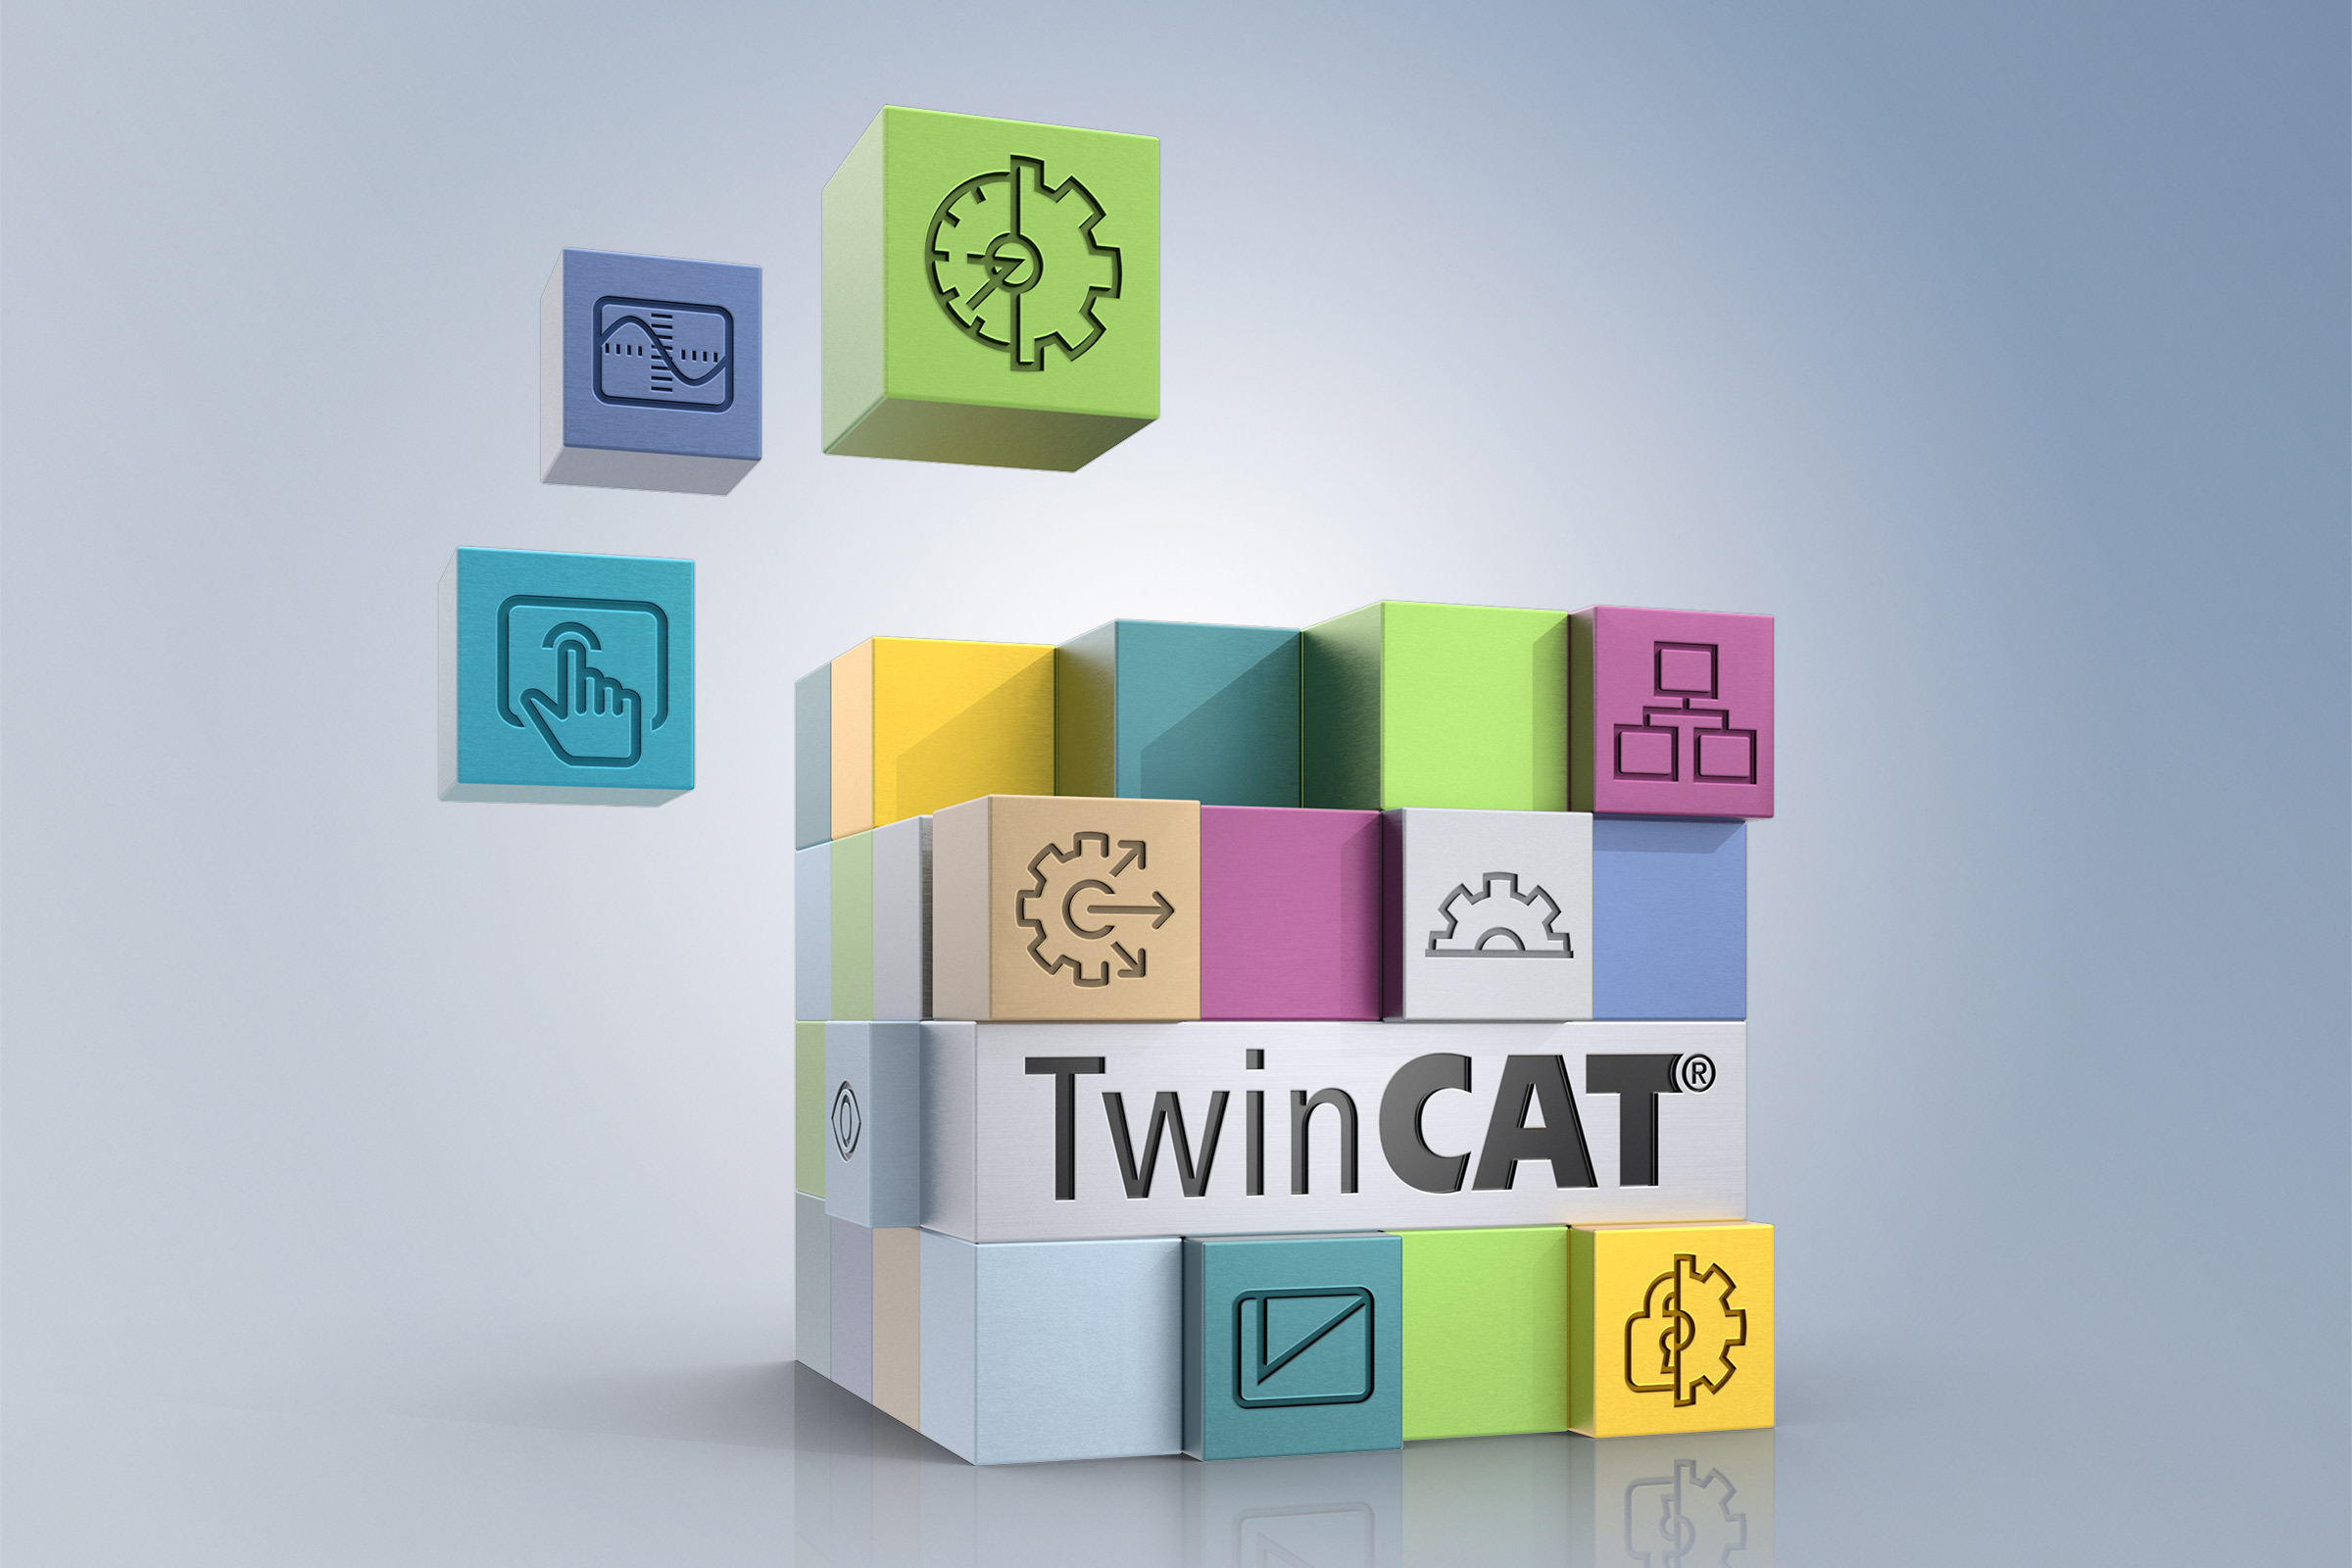 Das modulare Konzept von TwinCAT 3 ist der Schlüssel für eine moderne, flexible und gleichzeitig stabile sowie langzeitverfügbare Plattform, auf deren Basis Maschinenserien mit geringstem Migrationsaufwand auch über viele Generationen hinweg kontinuierlich weiterentwickelt werden können. 